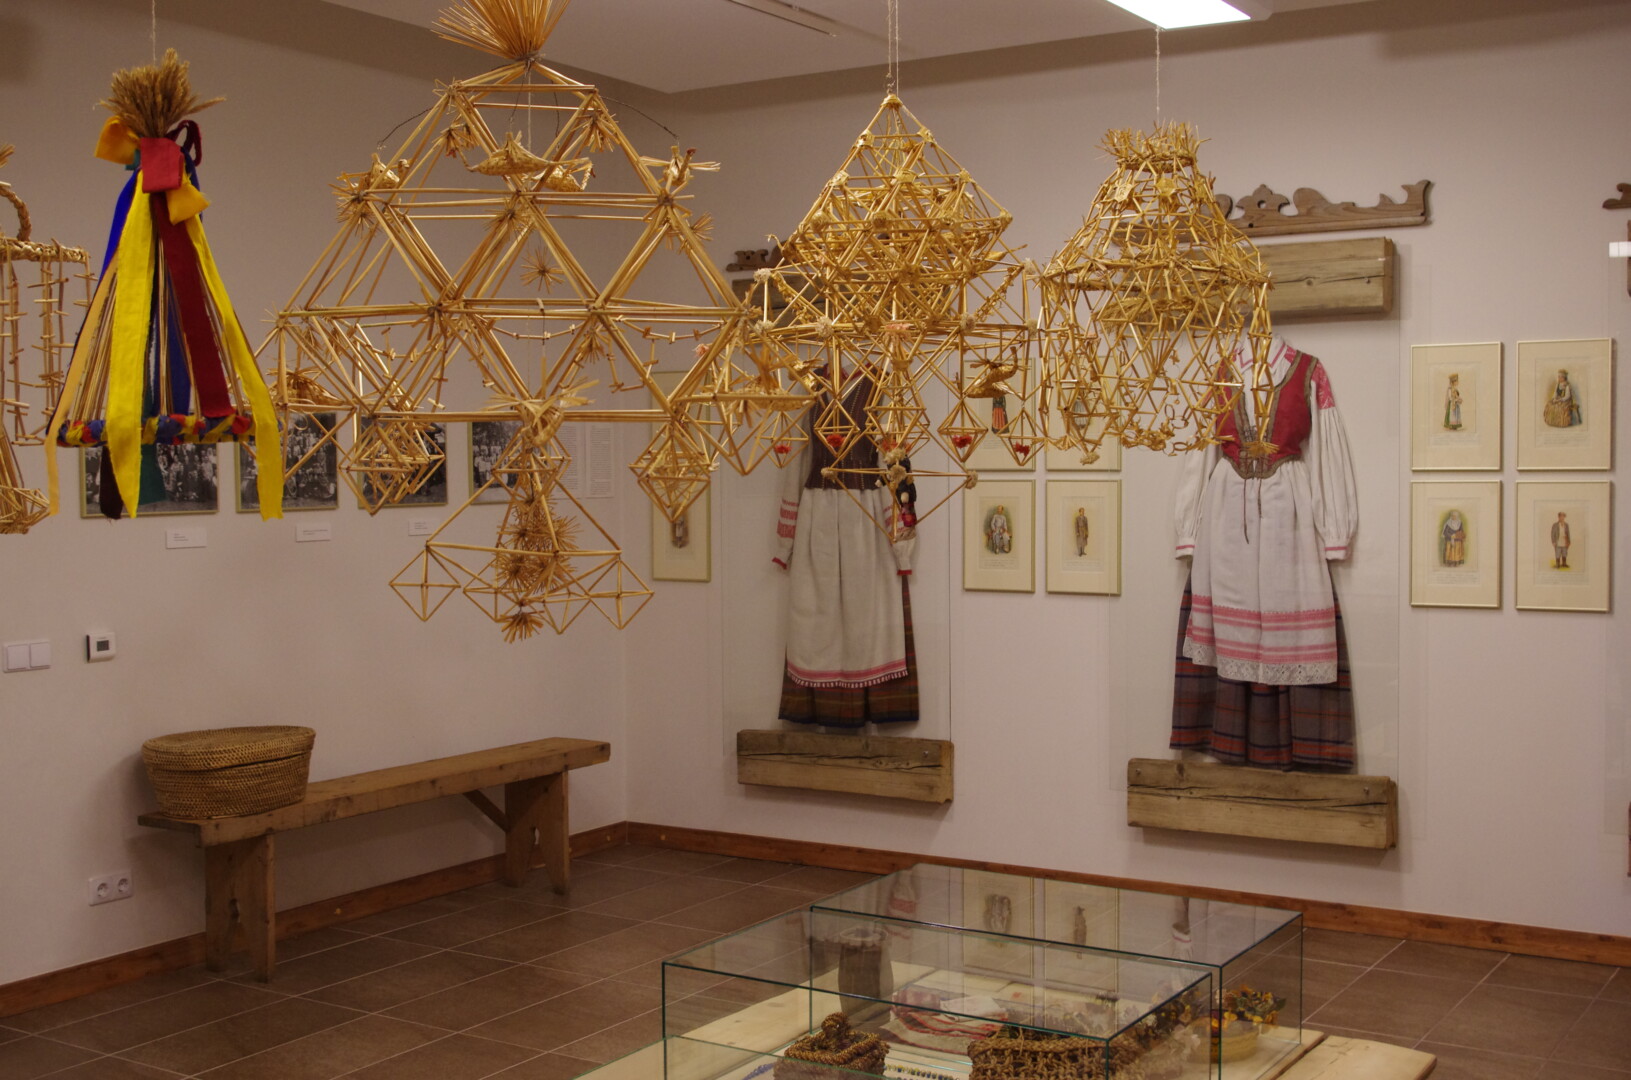 1961 metais Kupiškio vidurinėje mokykloje vyko kupiškėnų etnografinė paroda, kurioje buvo eksponuojamas ir seserų Glemžaičių rinkinys – apie 6 000 eksponatų. Dalis jų tapo pagrindu atkurti Kupiškio muziejų. R. ANIKANOVO nuotr.